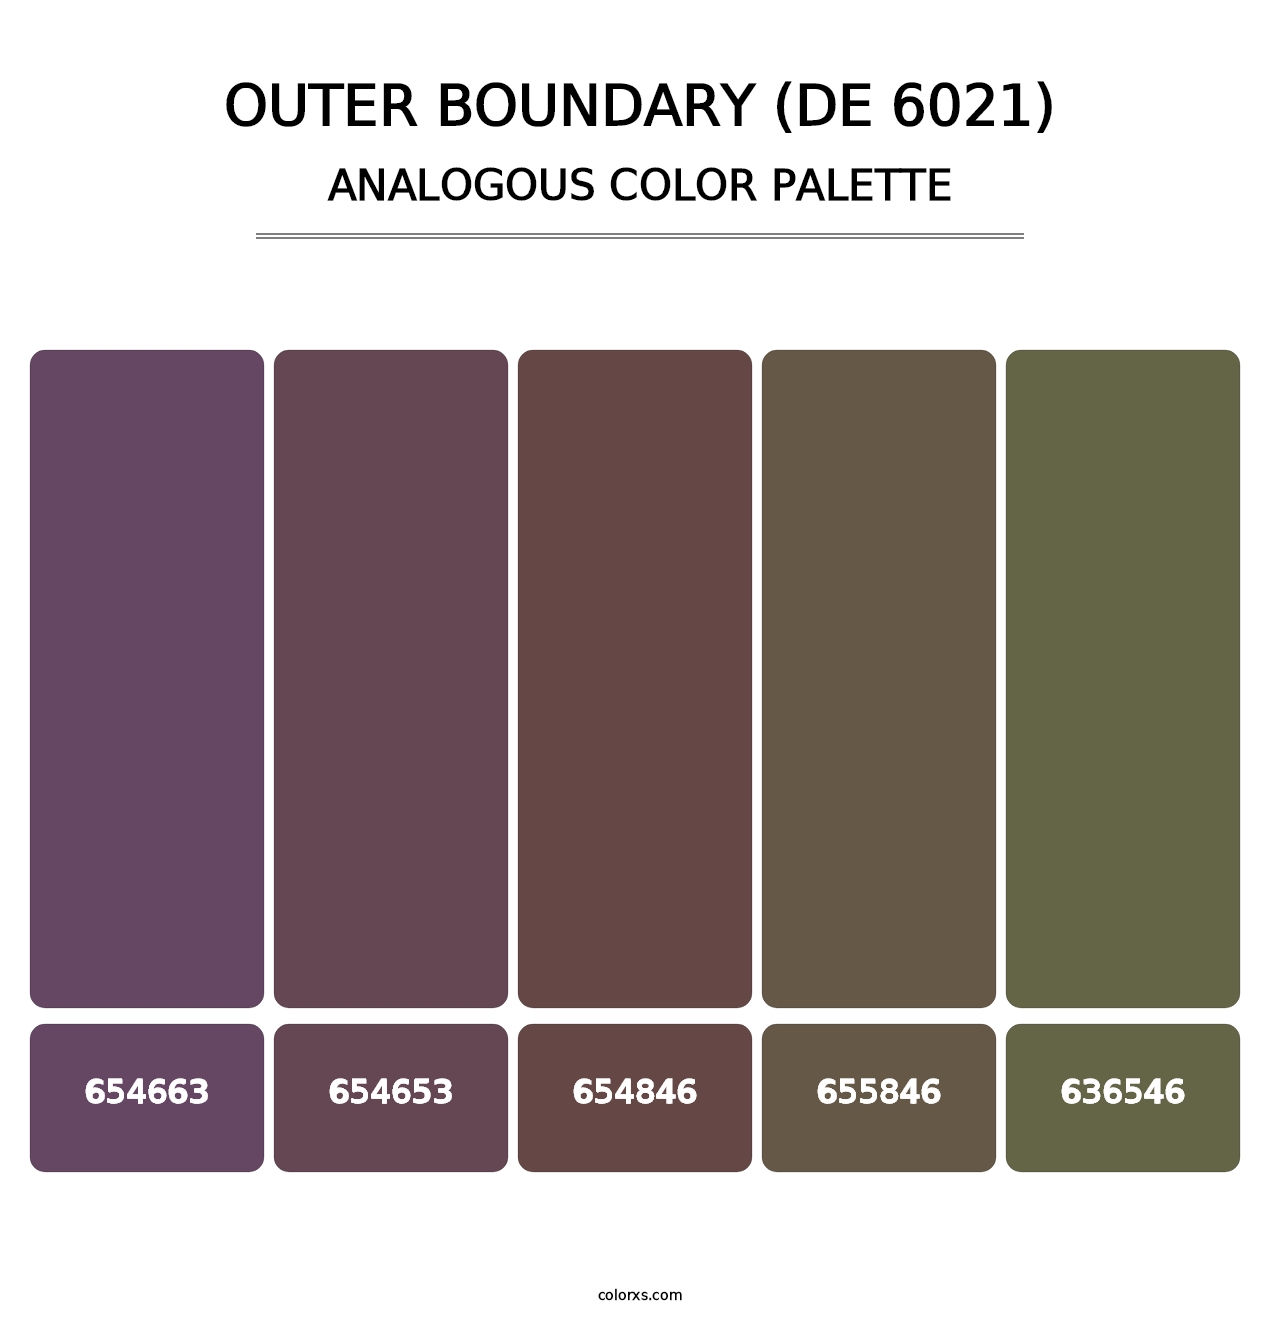 Outer Boundary (DE 6021) - Analogous Color Palette